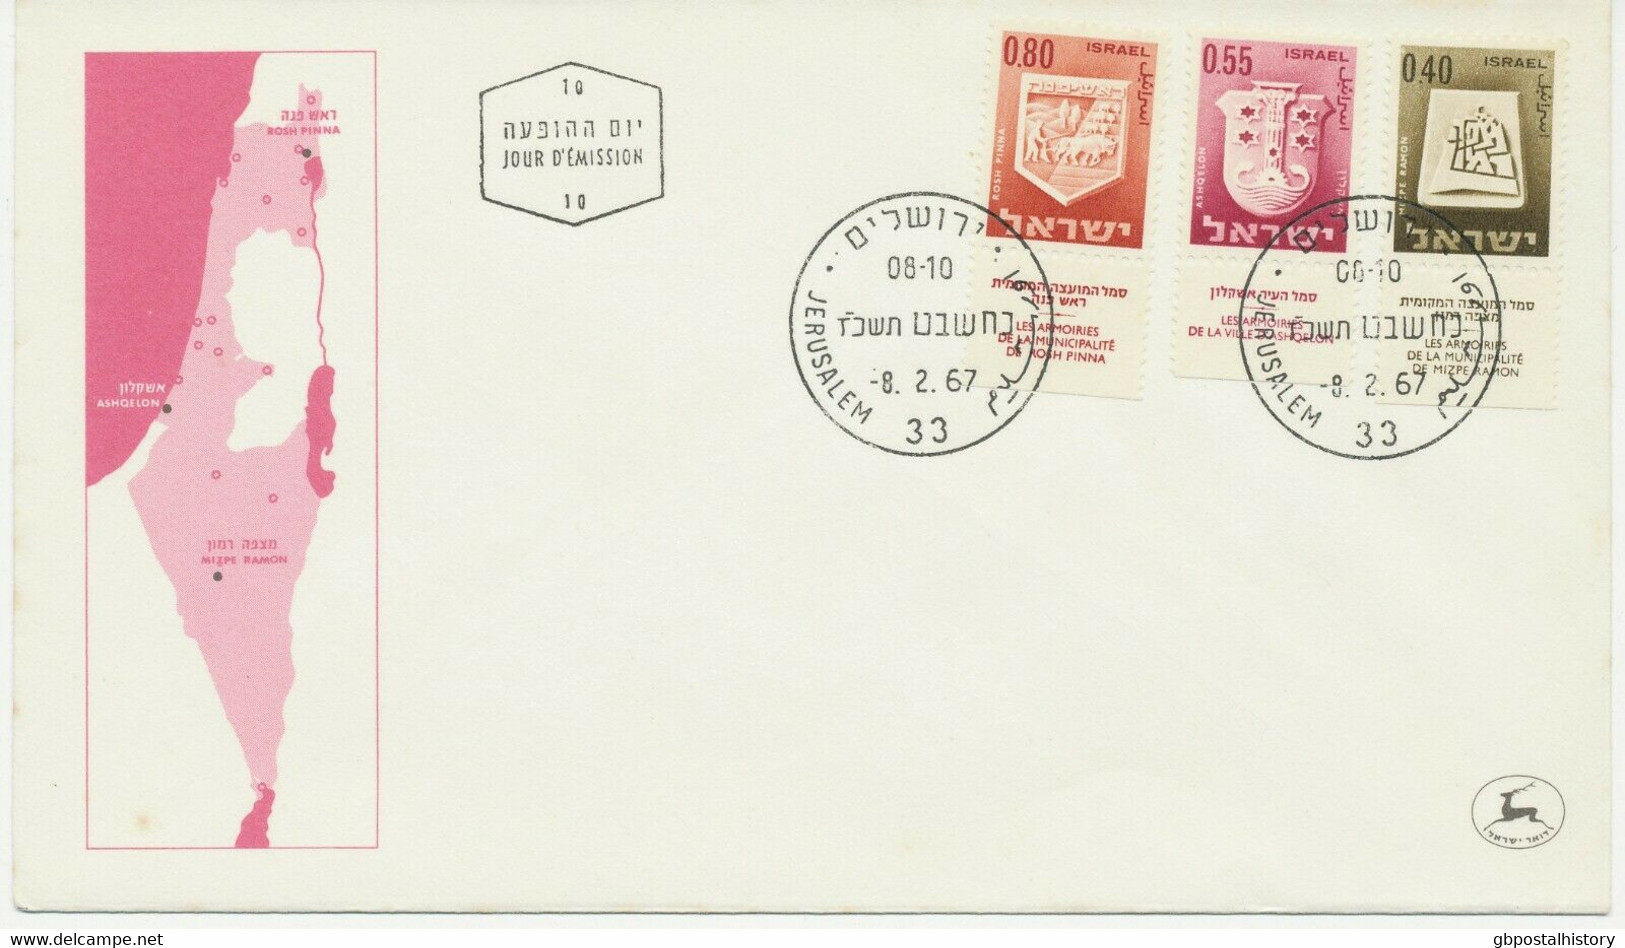 ISRAEL 1965/7, Wappen von Städten und Orten Israels kpl. mit Zierfeld a. 7 FDC's